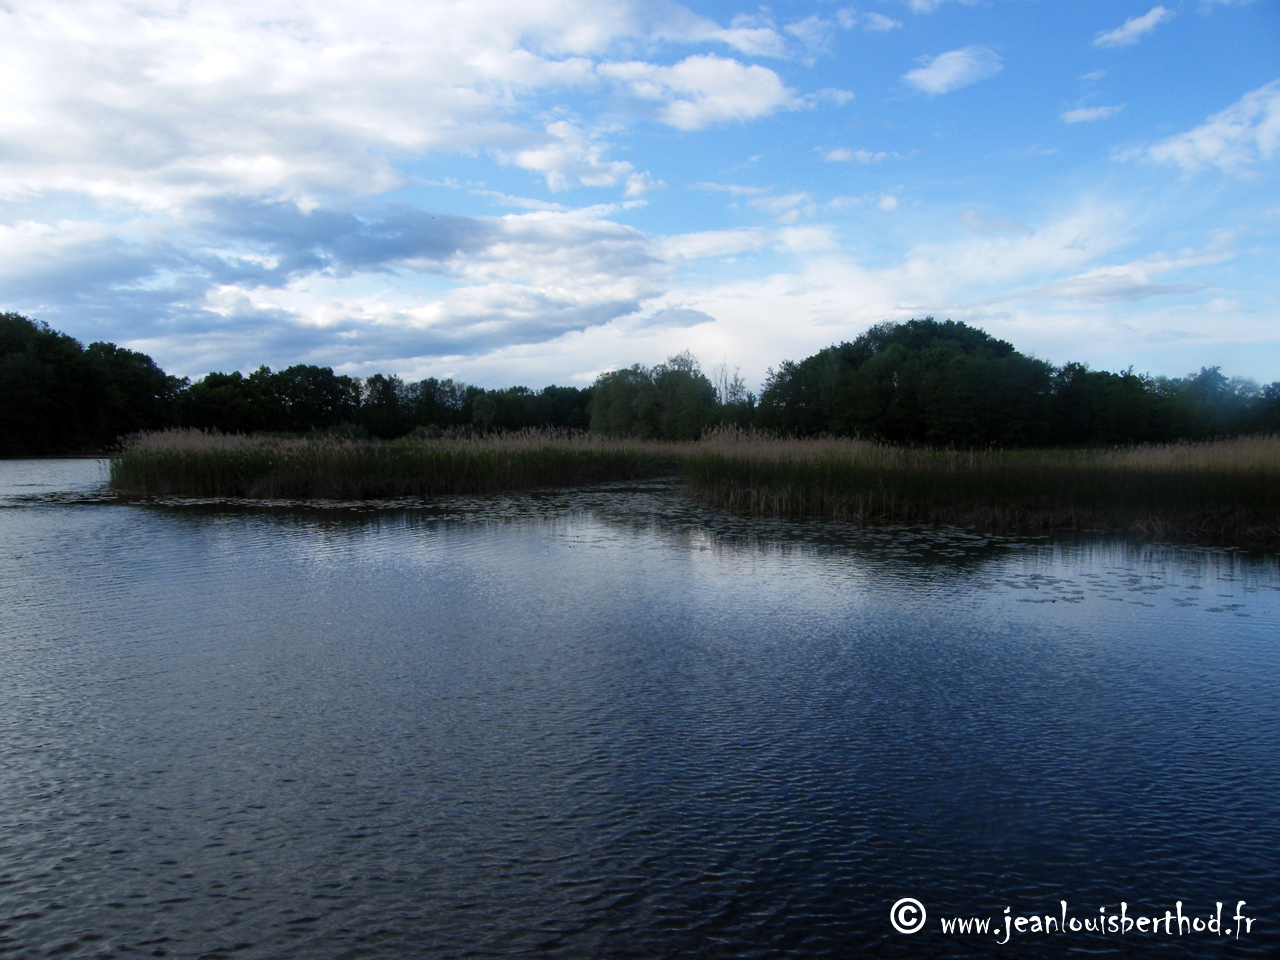 The Pond of Crosagny2